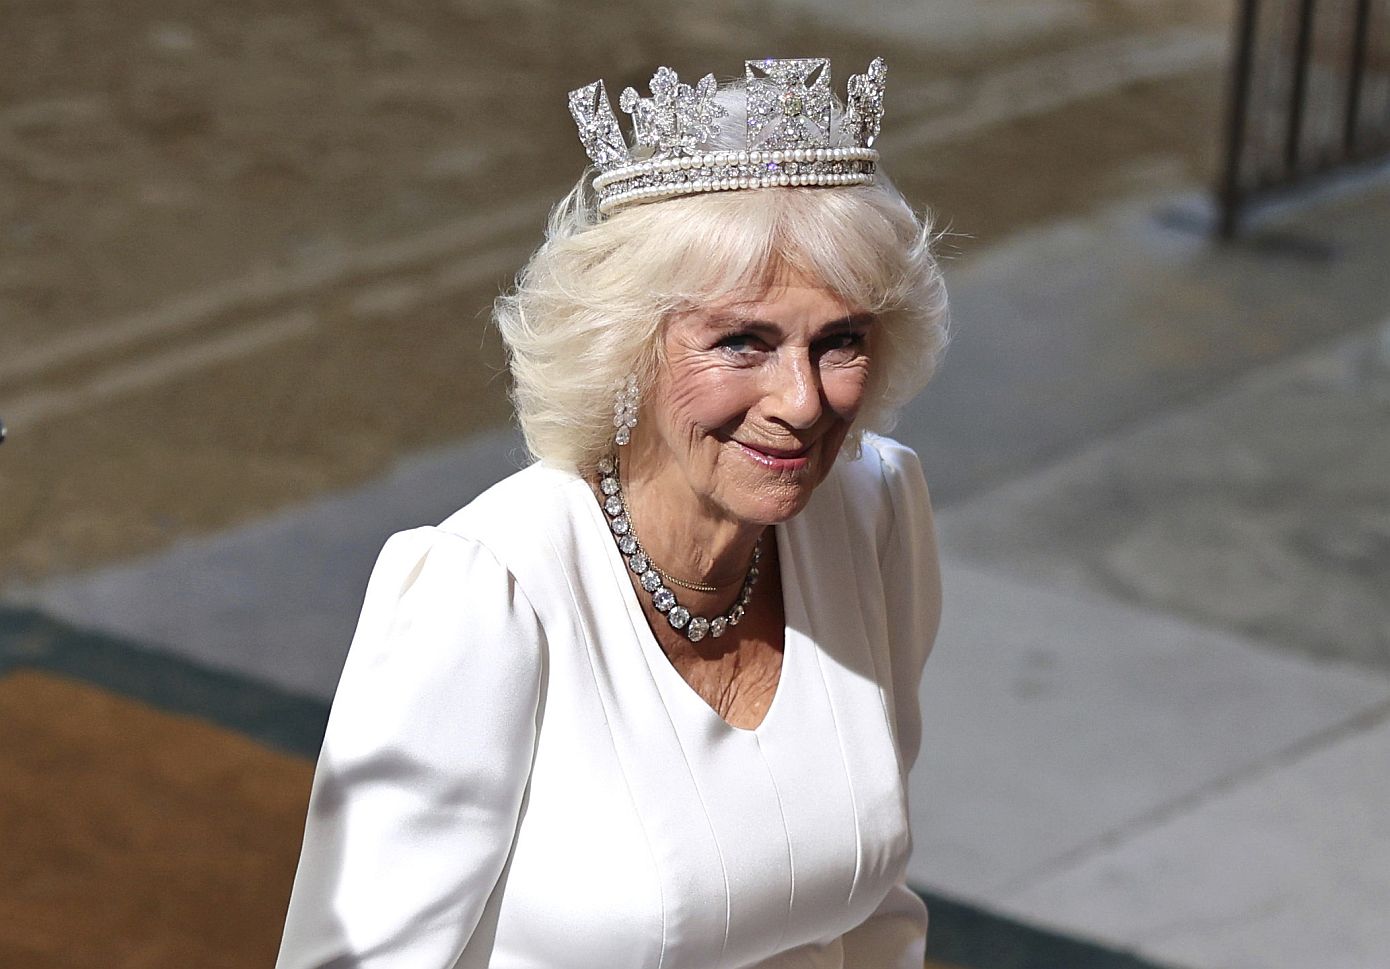 Tι ειρωνία: Η Camilla κρατά την τσάντα Dior που πήρε το όνομά της από την Lady Diana